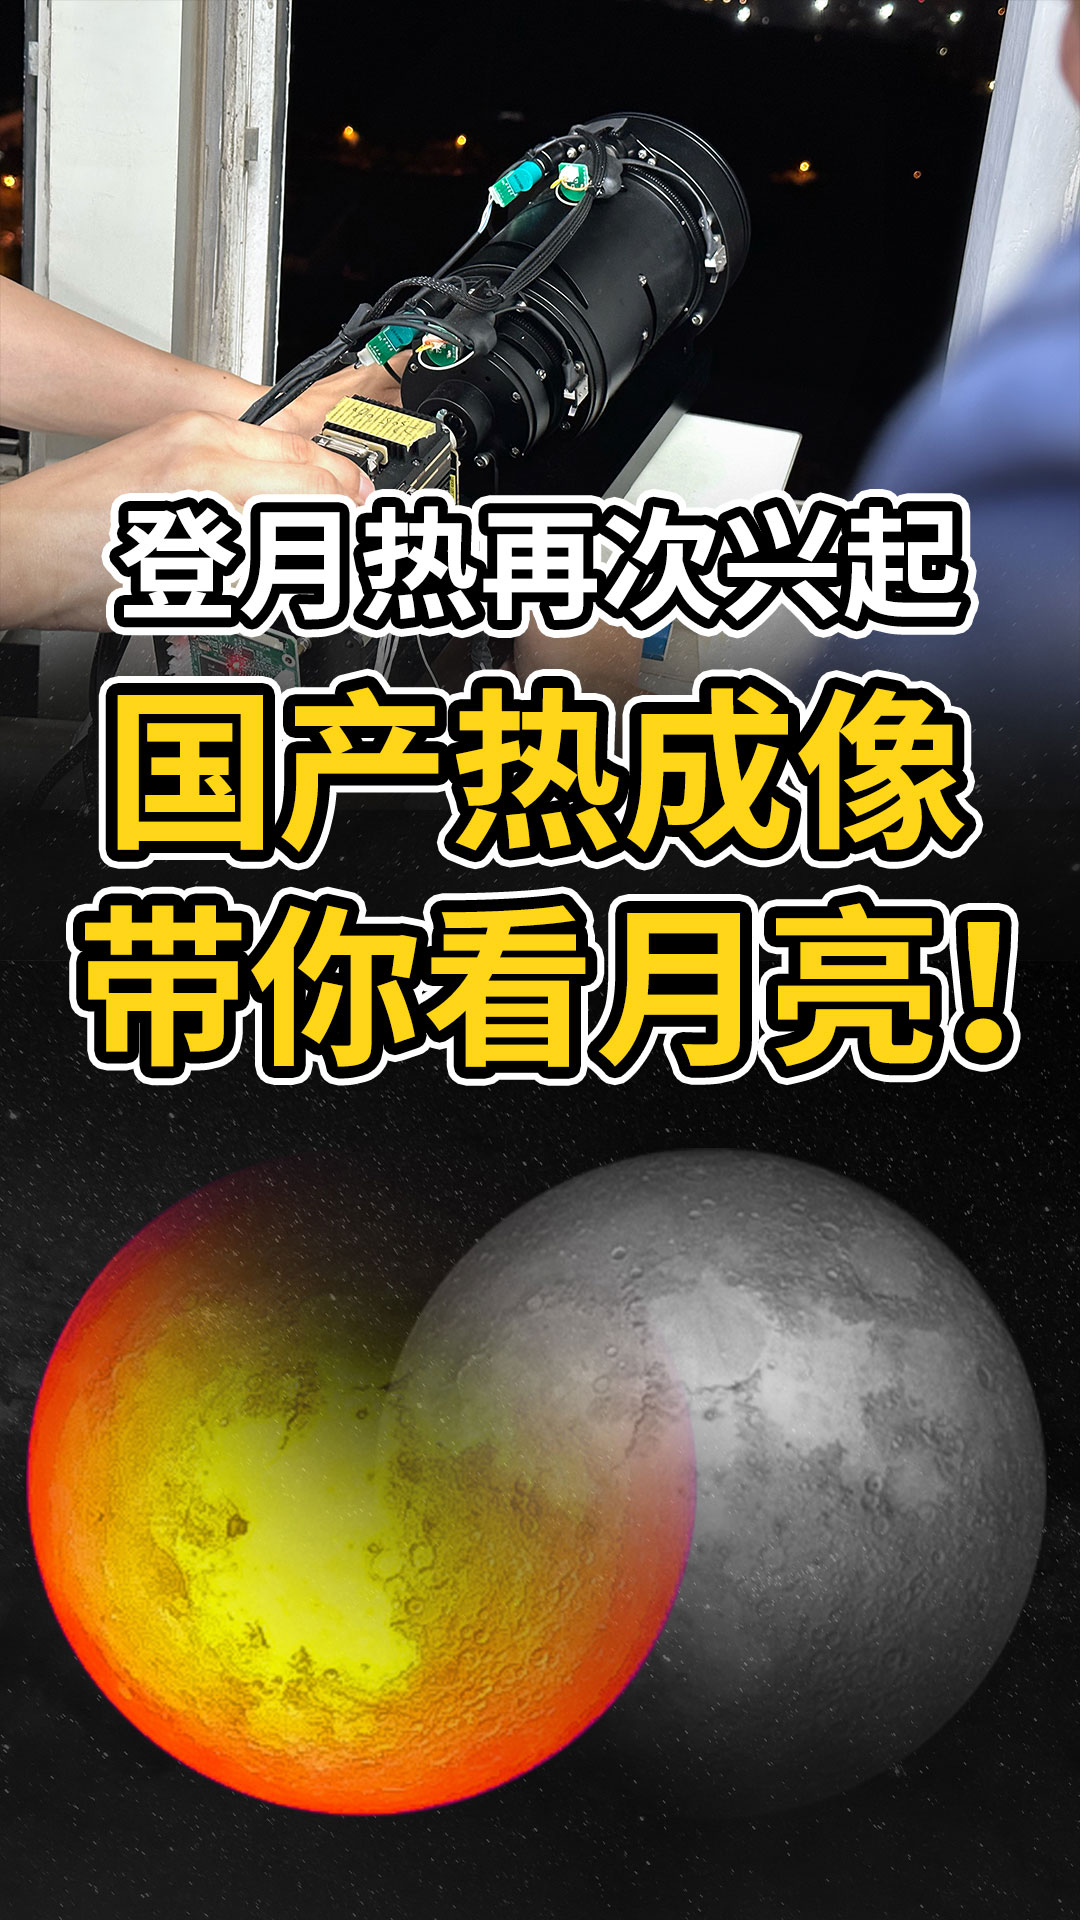 把人类送往月球需要几步？不造！先来看看国产热成像下的月亮吧！#红外热成像 #红外摄影 #红外技术 